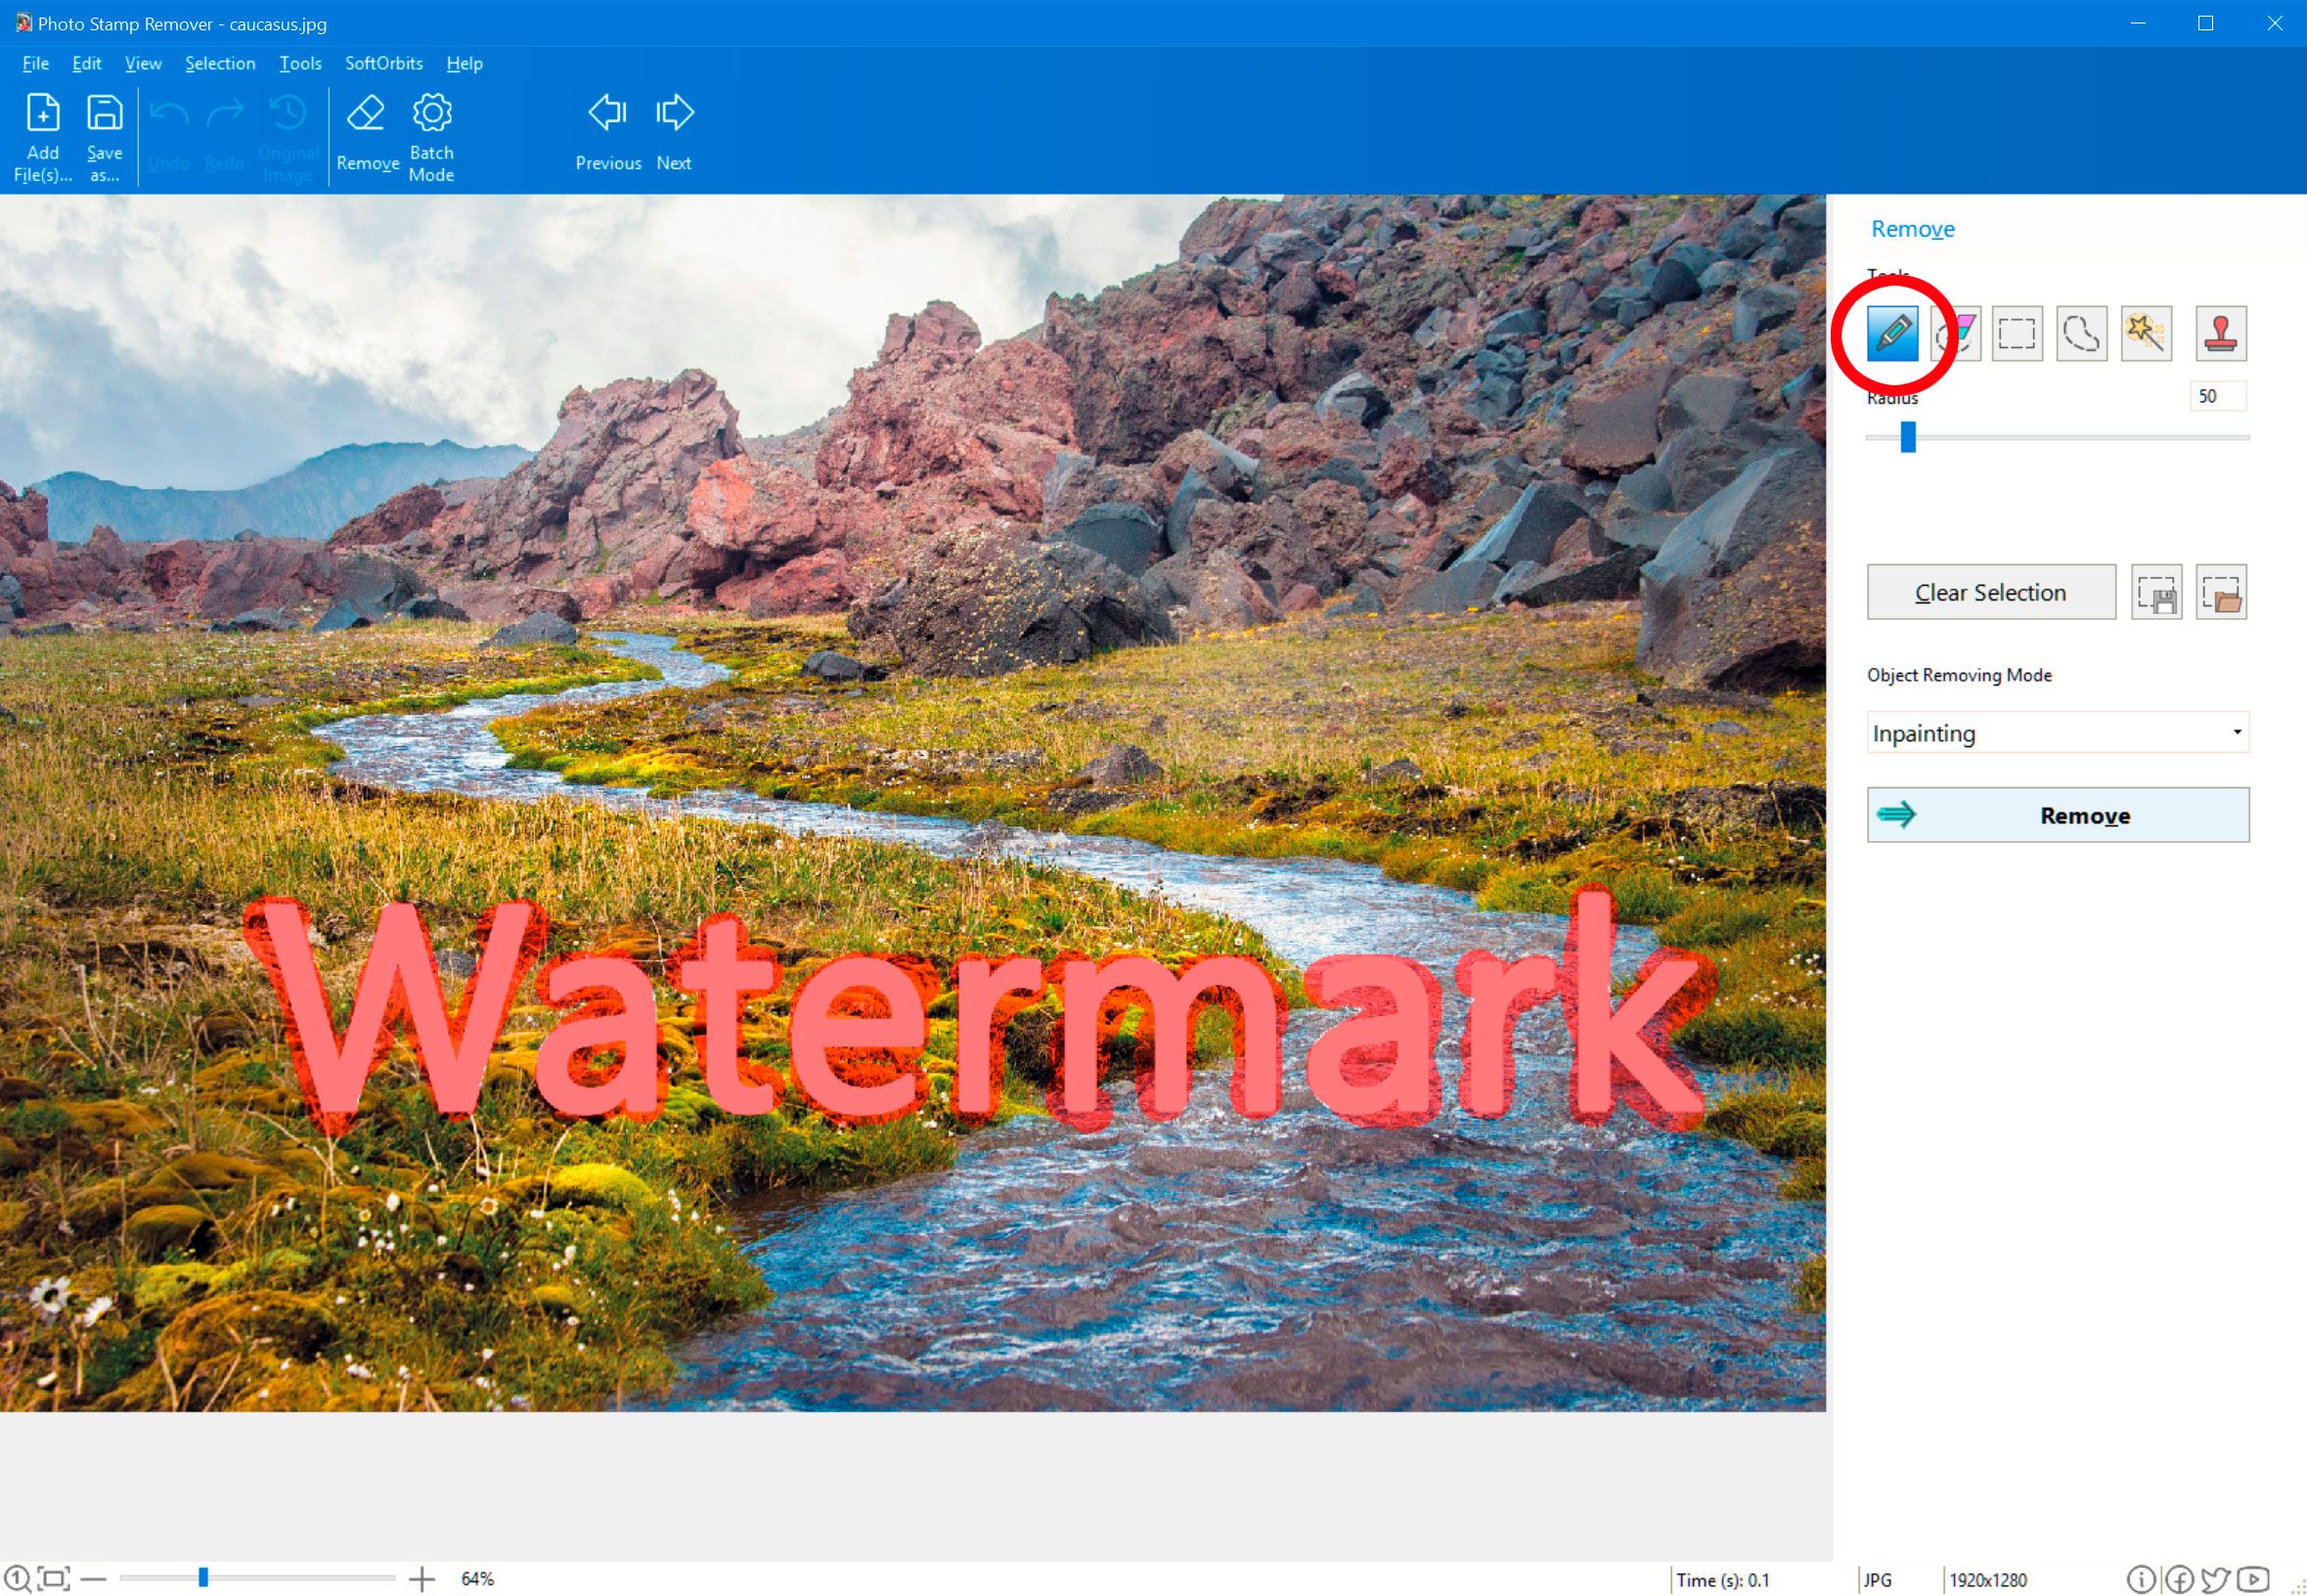 Marker tool om iStock Photo Watermark te verwijderen..